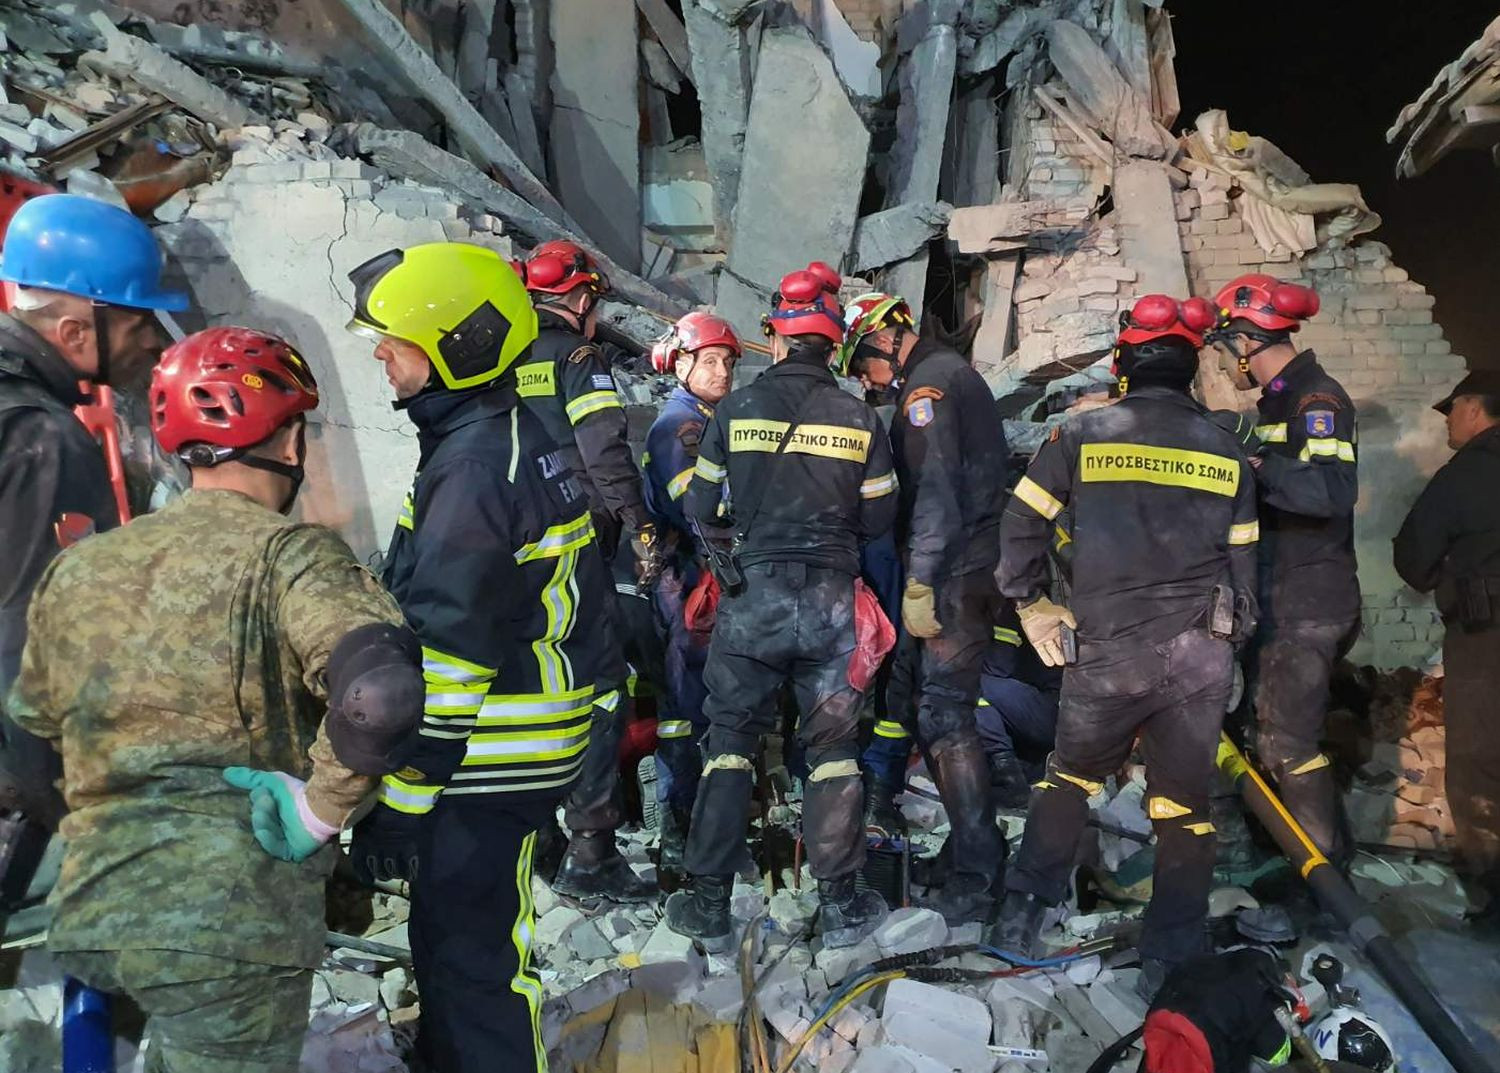 Αυξάνεται ο αριθμός των νεκρών - Δραματικές επιχειρήσεις των ομάδων διάσωσης - Εικόνες και βίντεο από τις προσπάθειες των Ελλήνων πυροσβεστών της ΕΜΑΚ